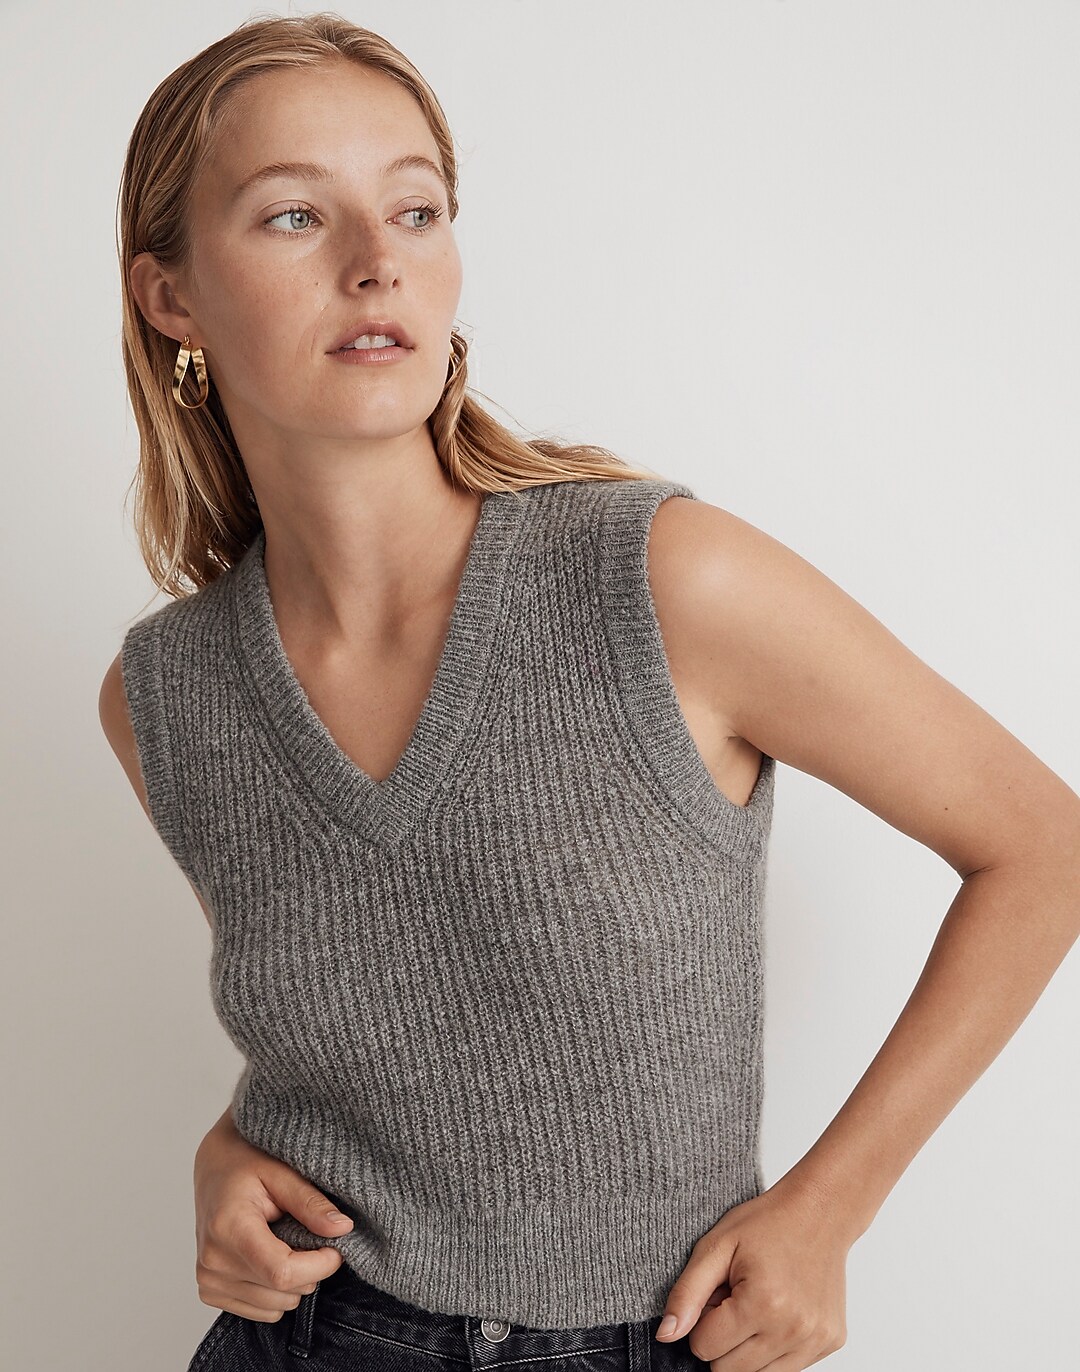 The Fineloft Shrunken Sweater Vest | Madewell